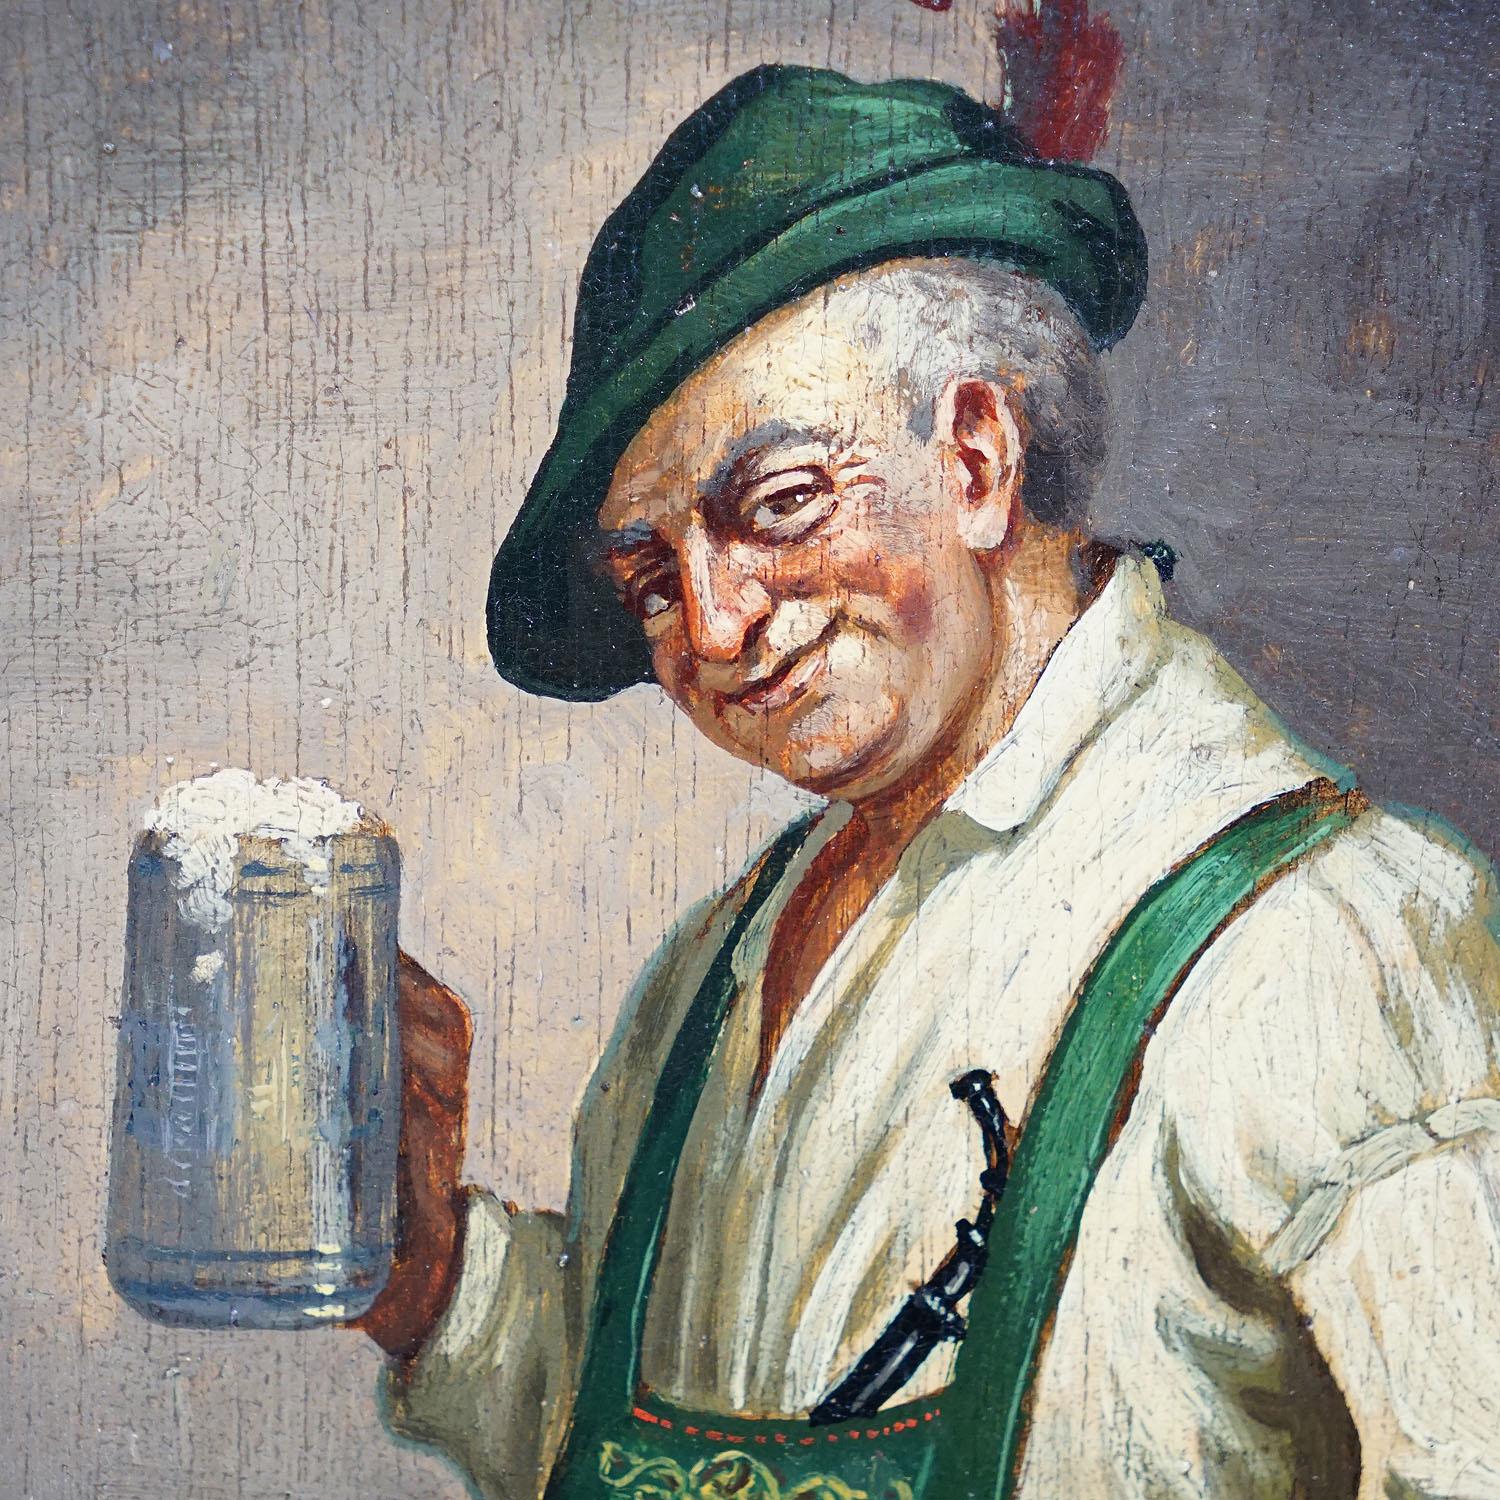 Painted Friedrich Lettau, Bavarian Folksy Man with Beer Mug, Oil on Wood Ca. 1950s